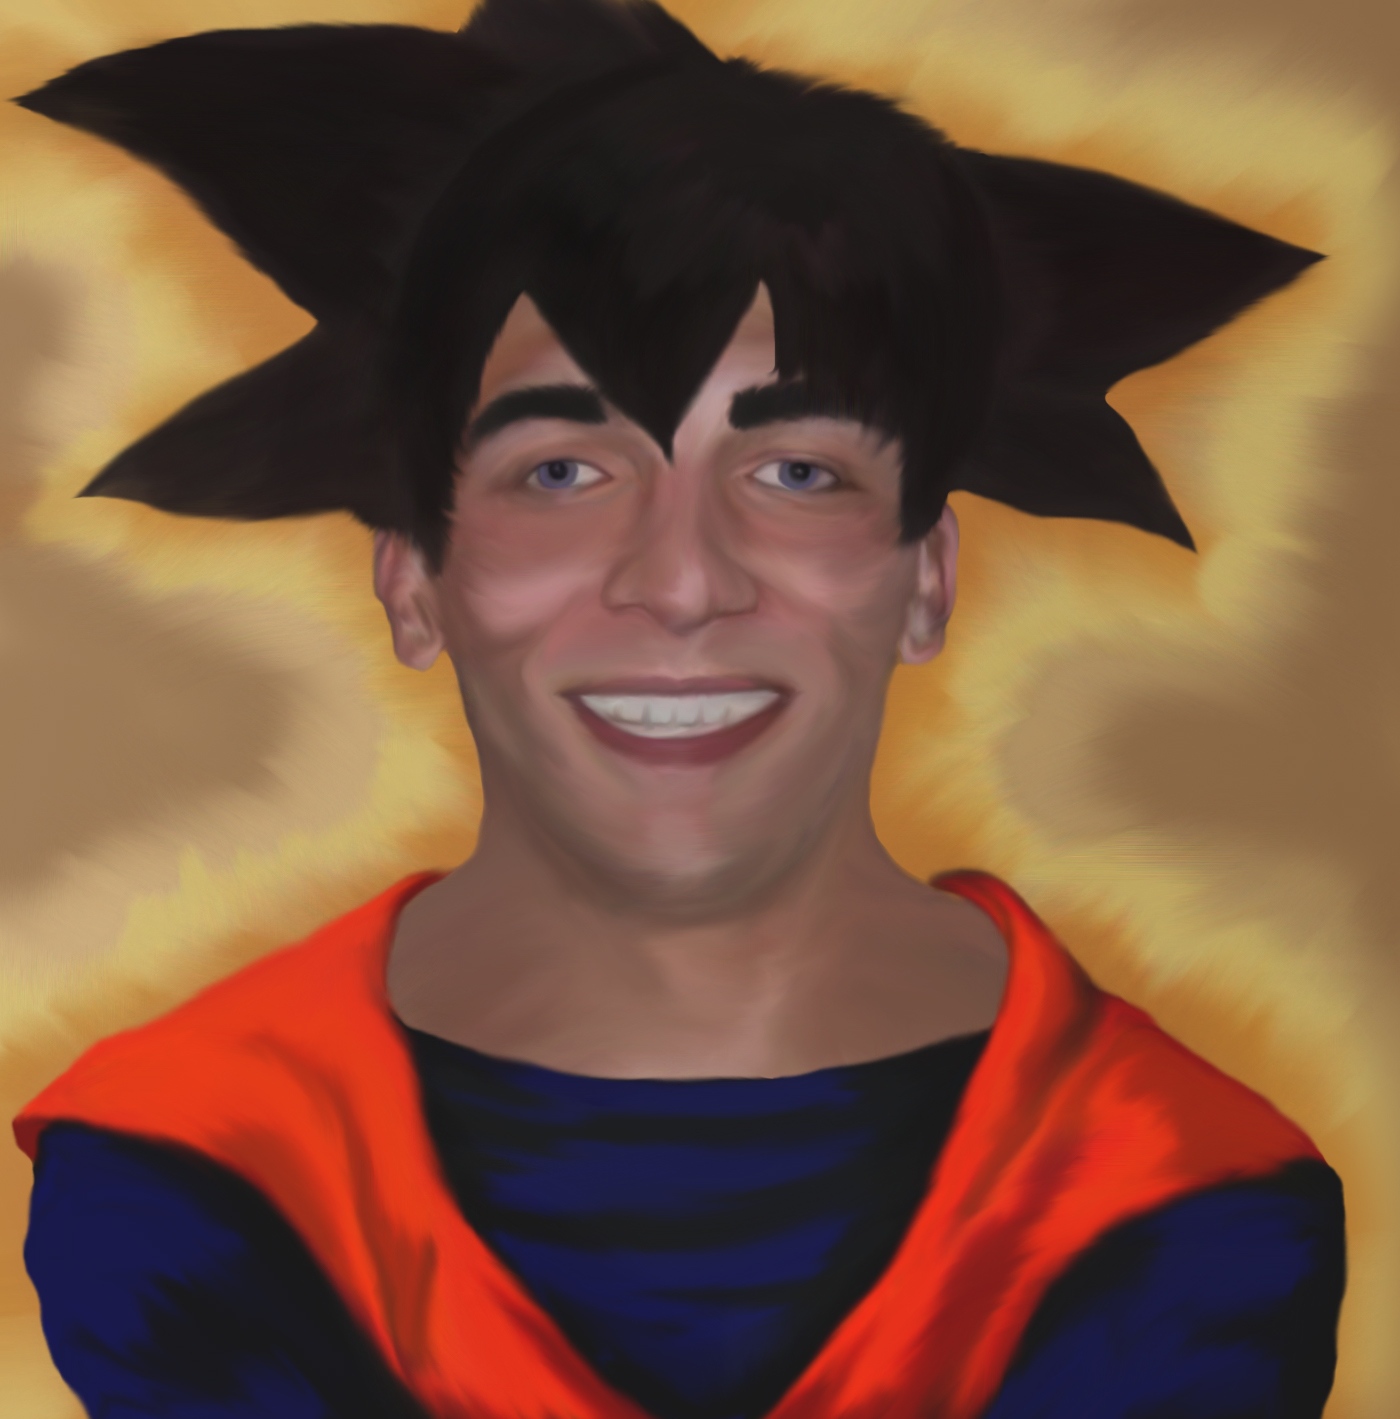 Bobbagknoosh as Goku